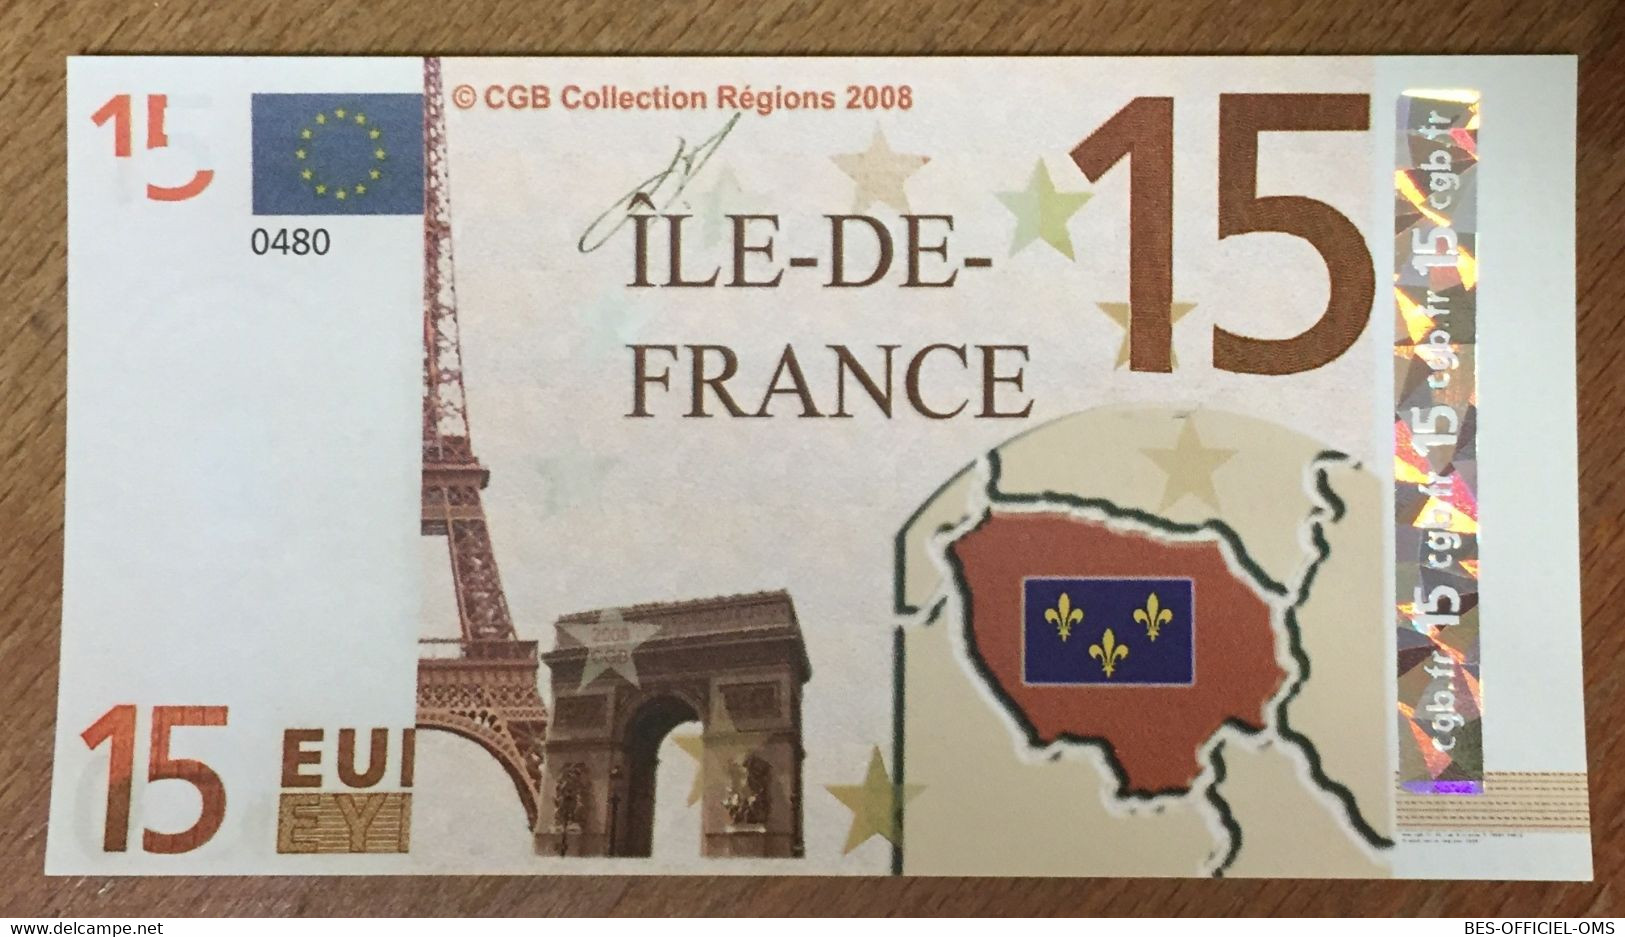 BILLET 15 EURO SOUVENIR ÎLE DE FRANCE 2008 EURO SCHEIN PAPER MONEY BANKNOTE PAPER LOCAL CURRENCY - Pruebas Privadas